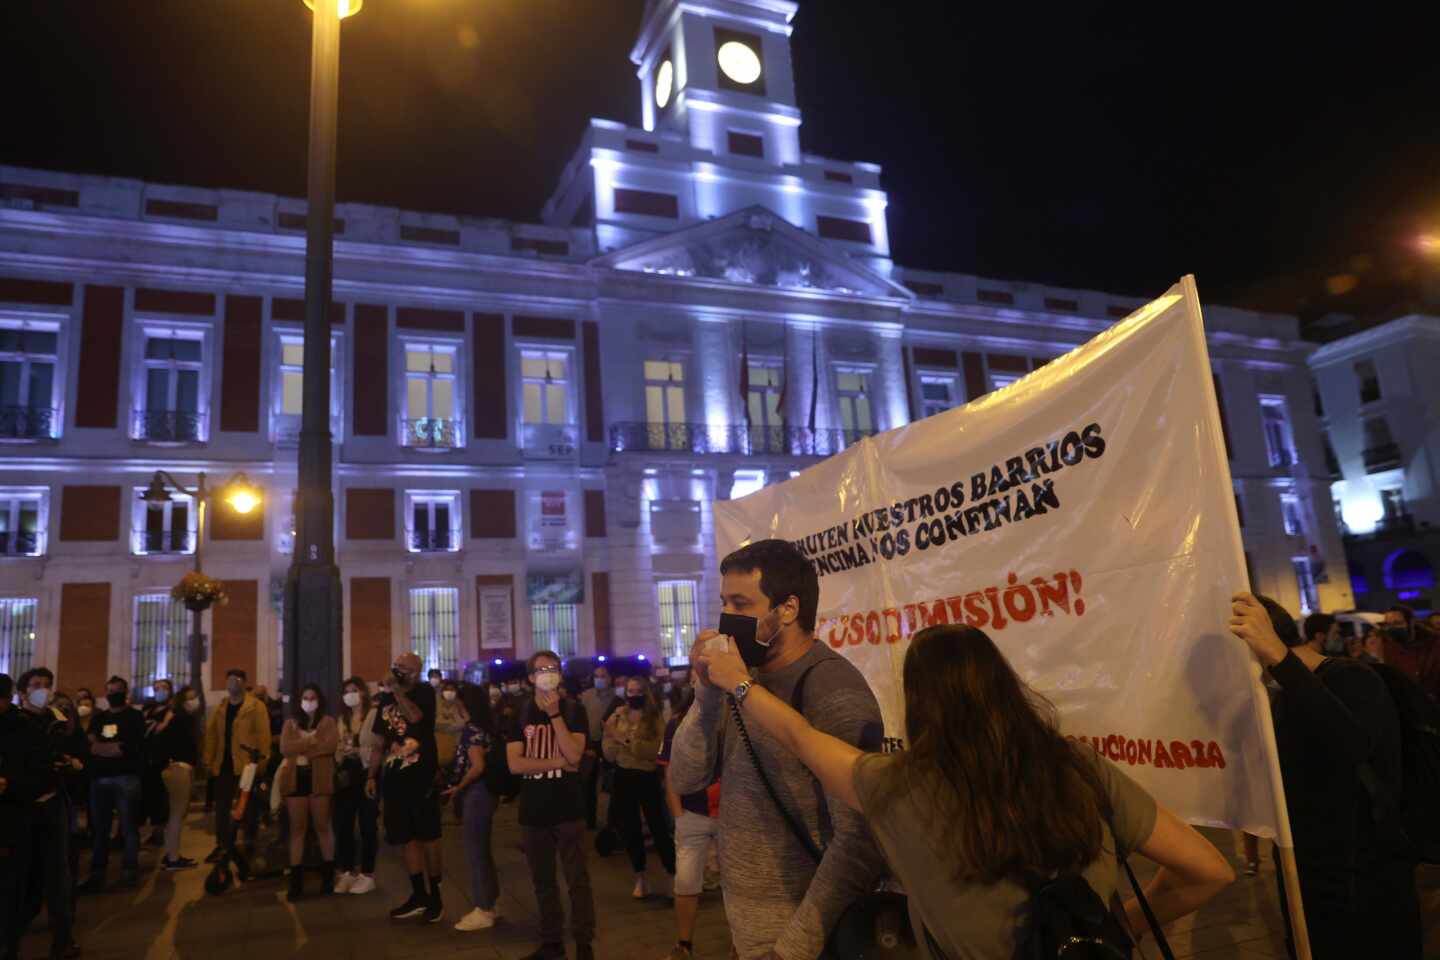 Protestas en la Puerta del Sol por las medidas "clasistas" de Díaz Ayuso